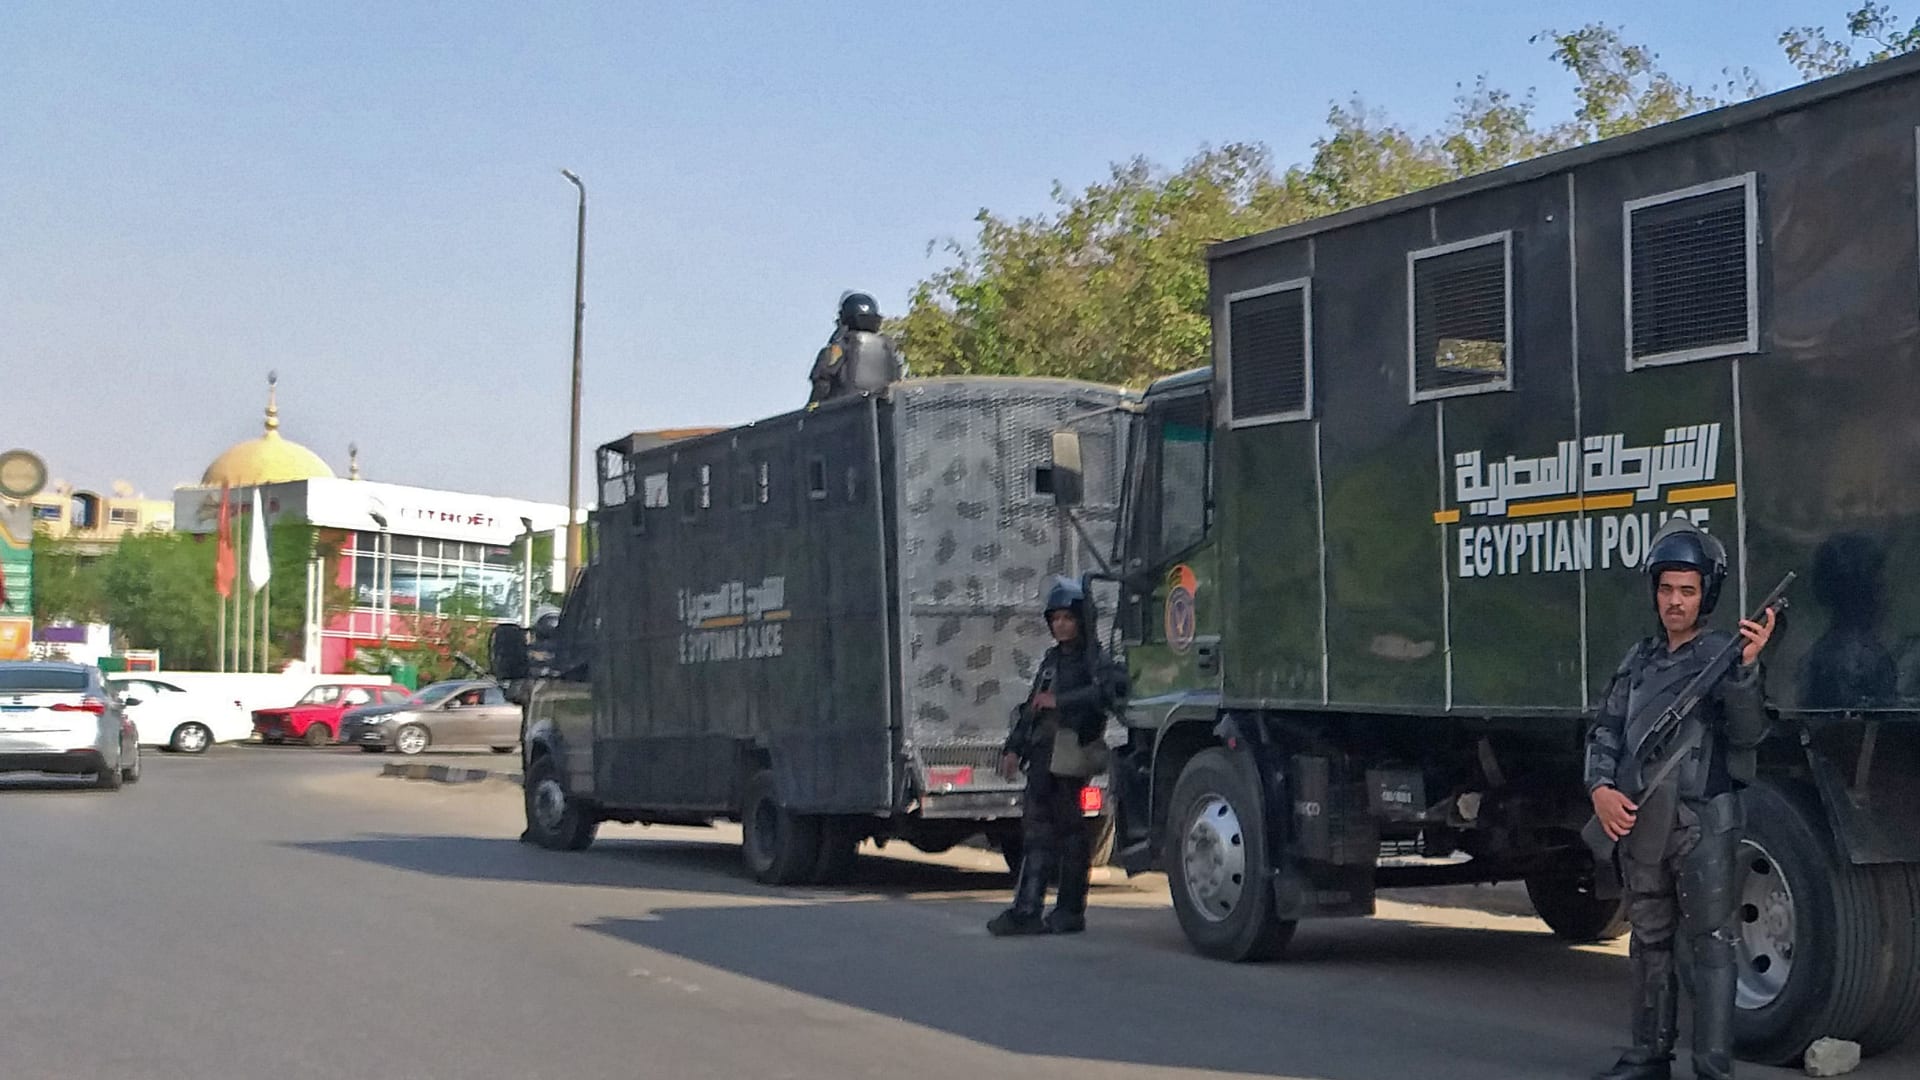 شرطة مكافحة الشغب المصرية في العاصمة المصرية القاهرة - 27 سبتمبر 2019.